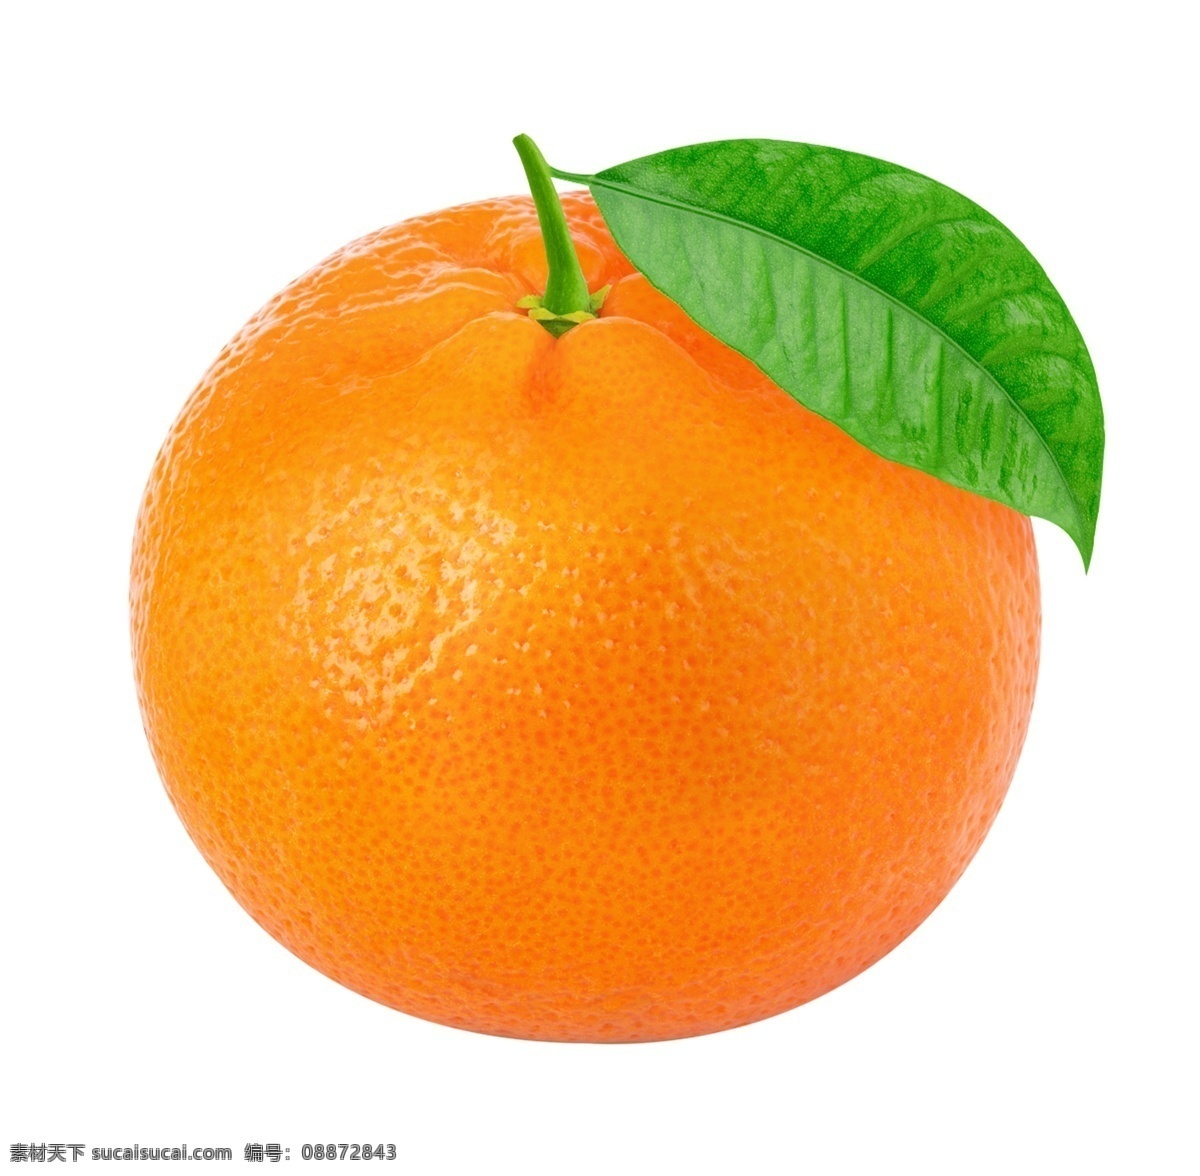 水果 柑橘修图 高清 农业 包装设计